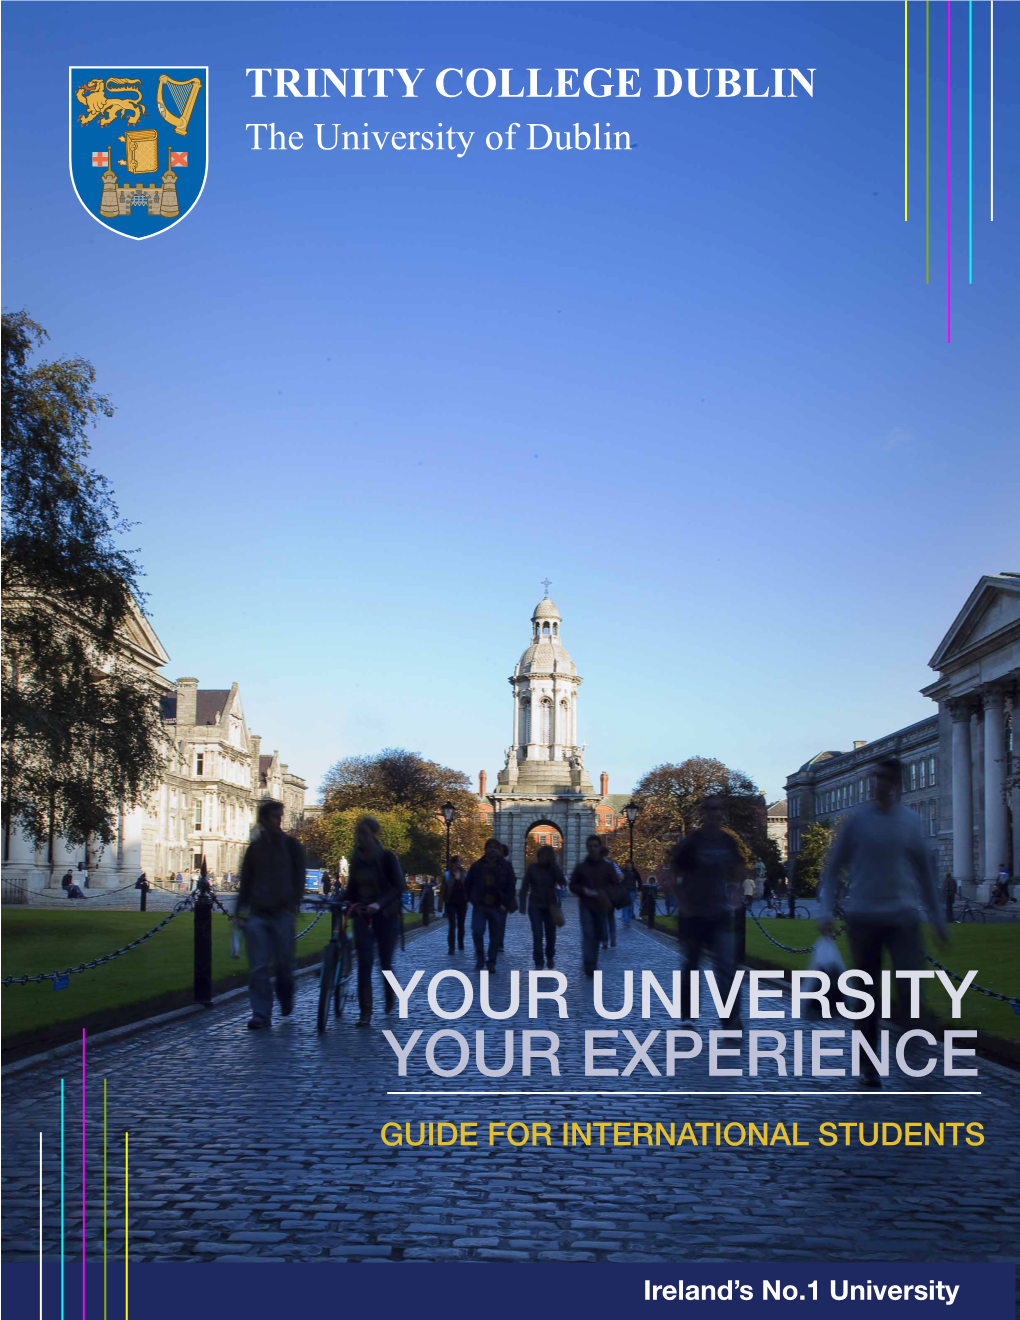 TRINITY COLLEGE DUBLIN the University of Dublin